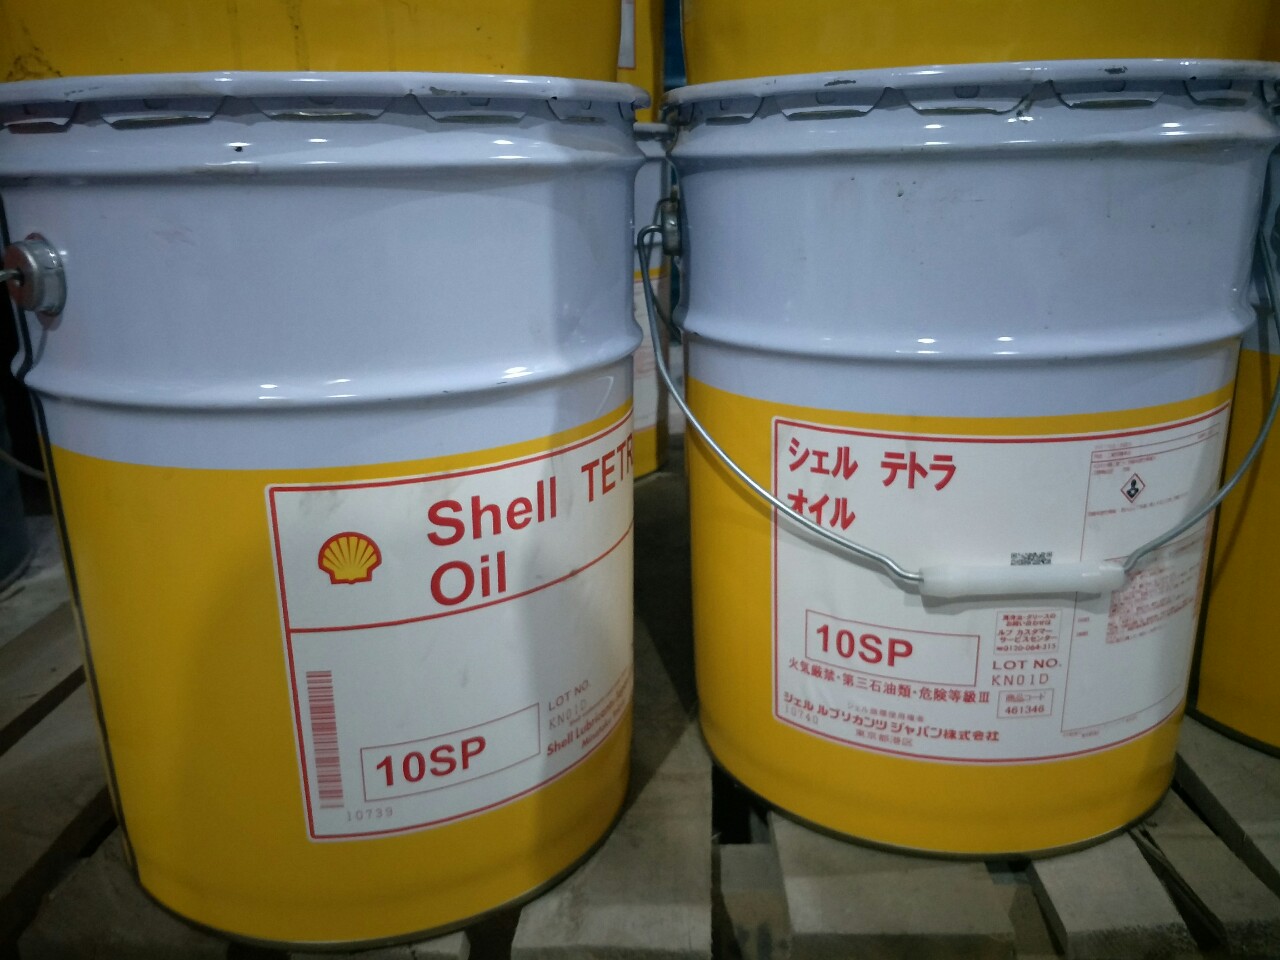 Shell Tetra Oil 10SP - Dầu trục chính